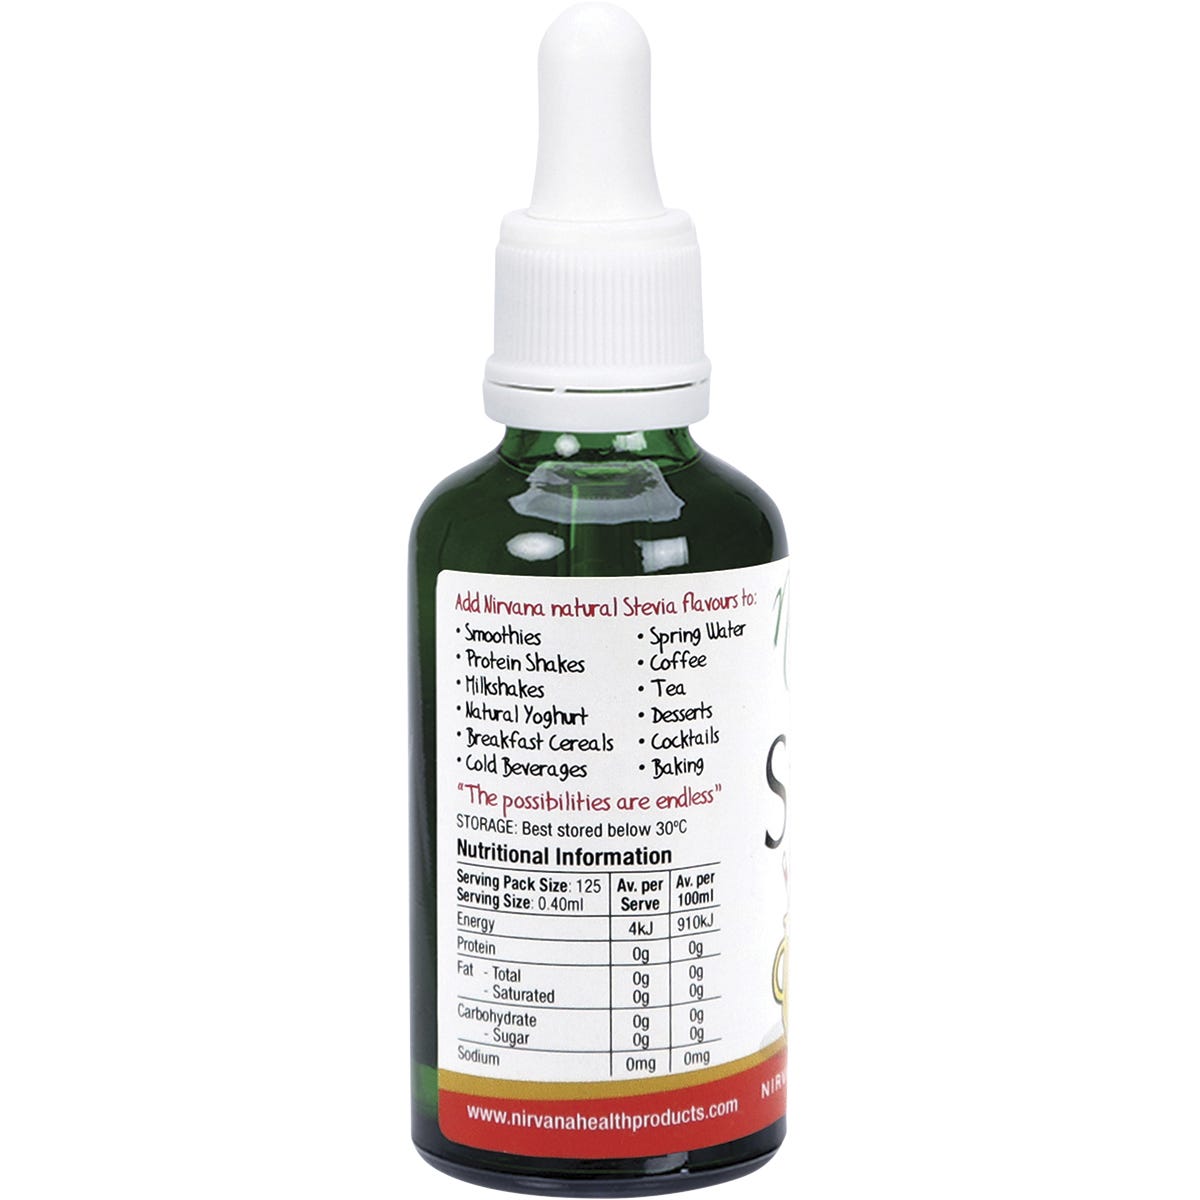 Nirvana Organics Liquid Stevia Ginger Ale 50ml - Dr Earth - Sweeteners